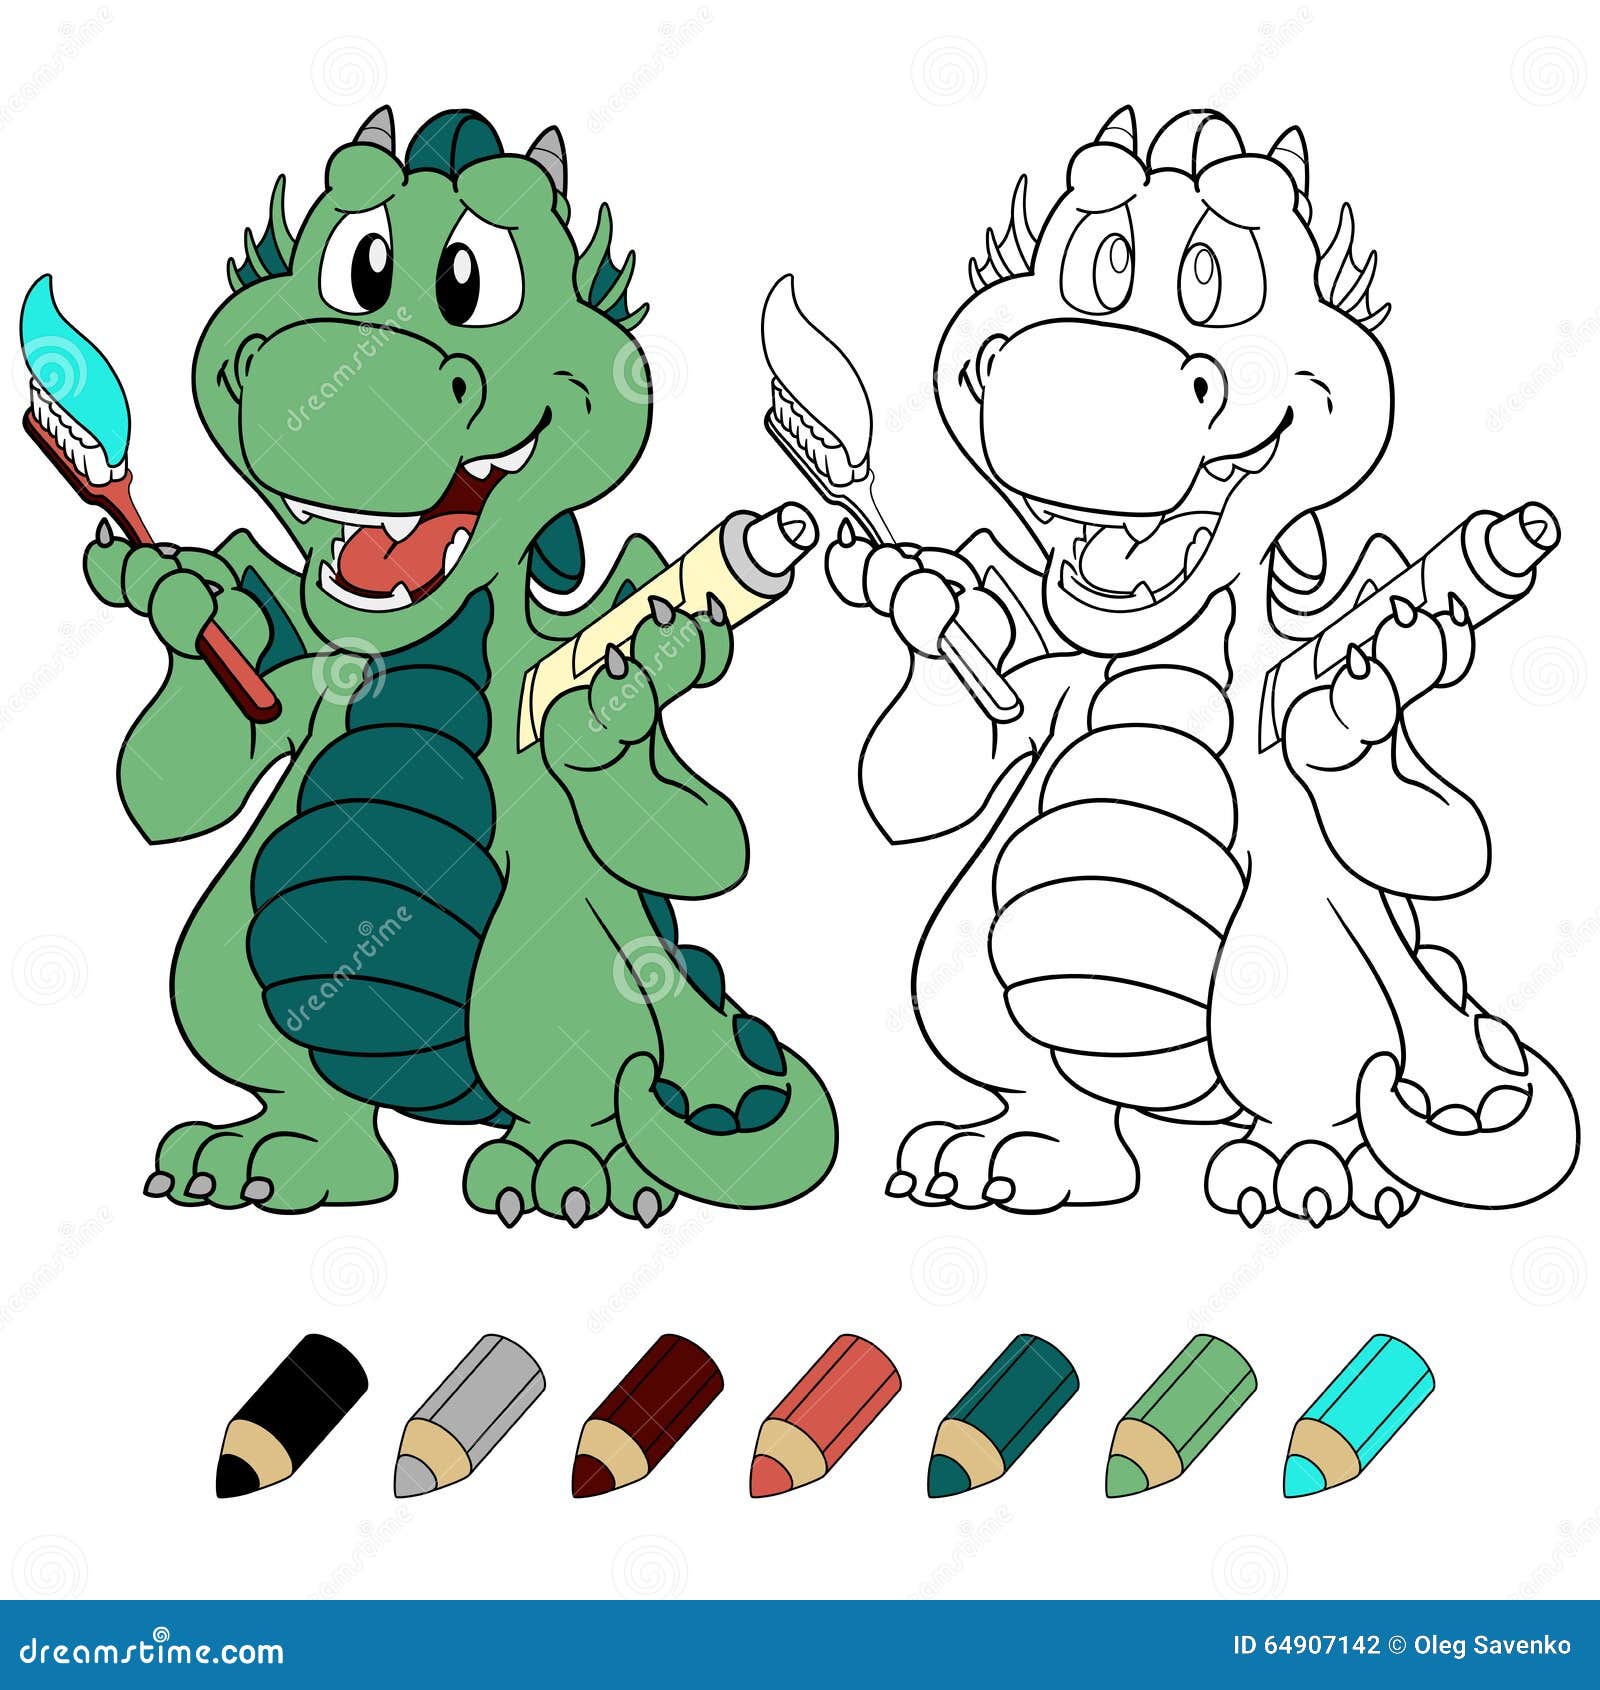 ÃÂ¡ute mint dragon with toothpaste and toothbrush coloring book version.